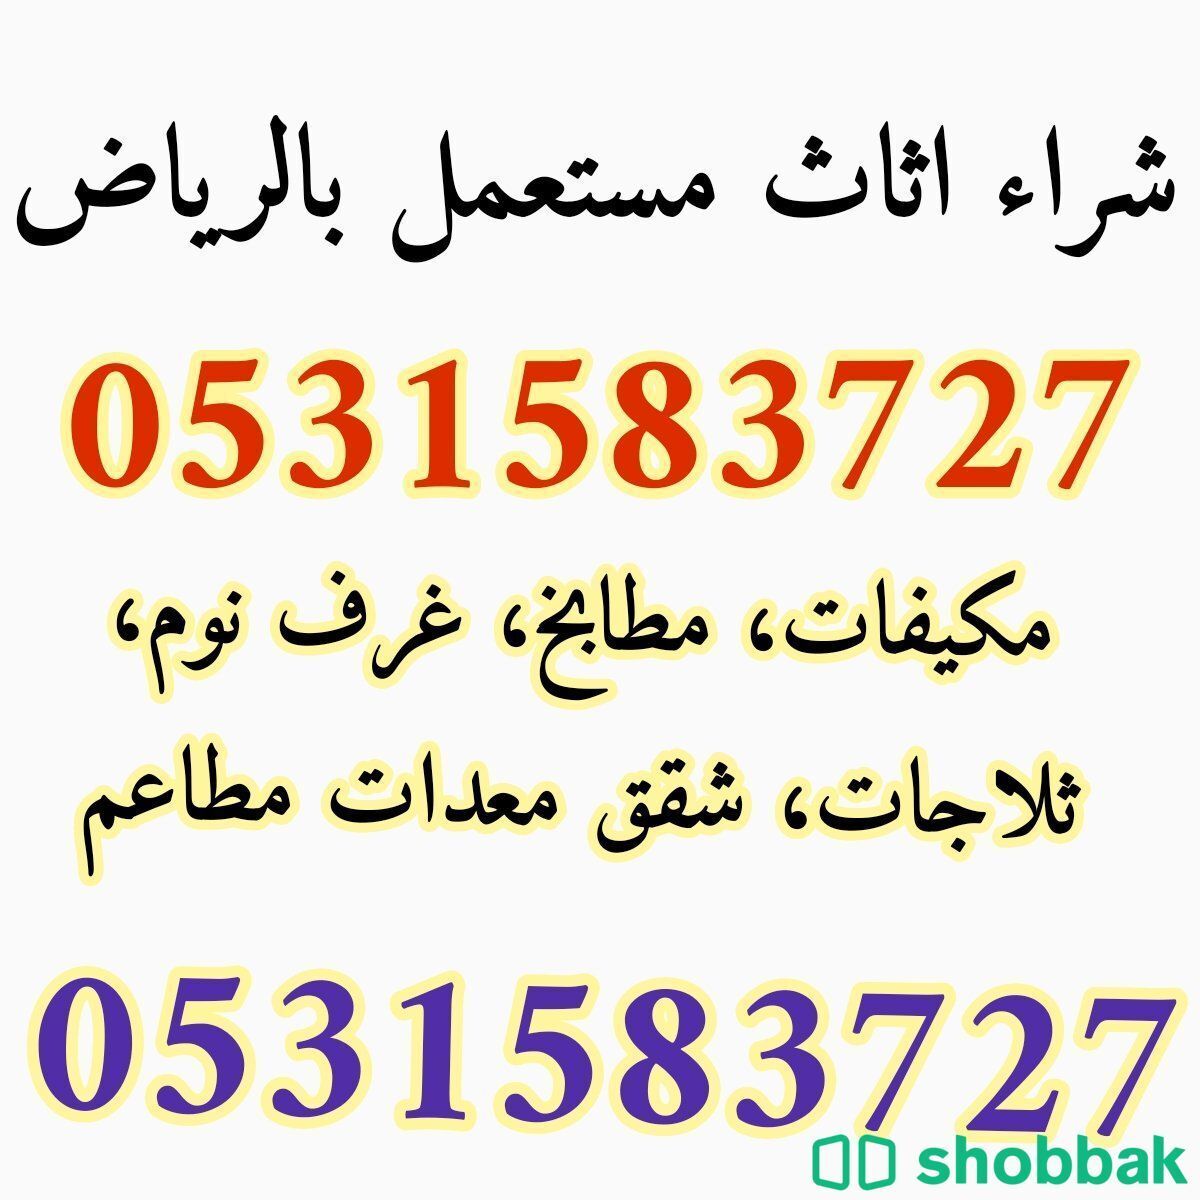 شراء اثاث مستعمل حي العزيزية 0531583727  Shobbak Saudi Arabia